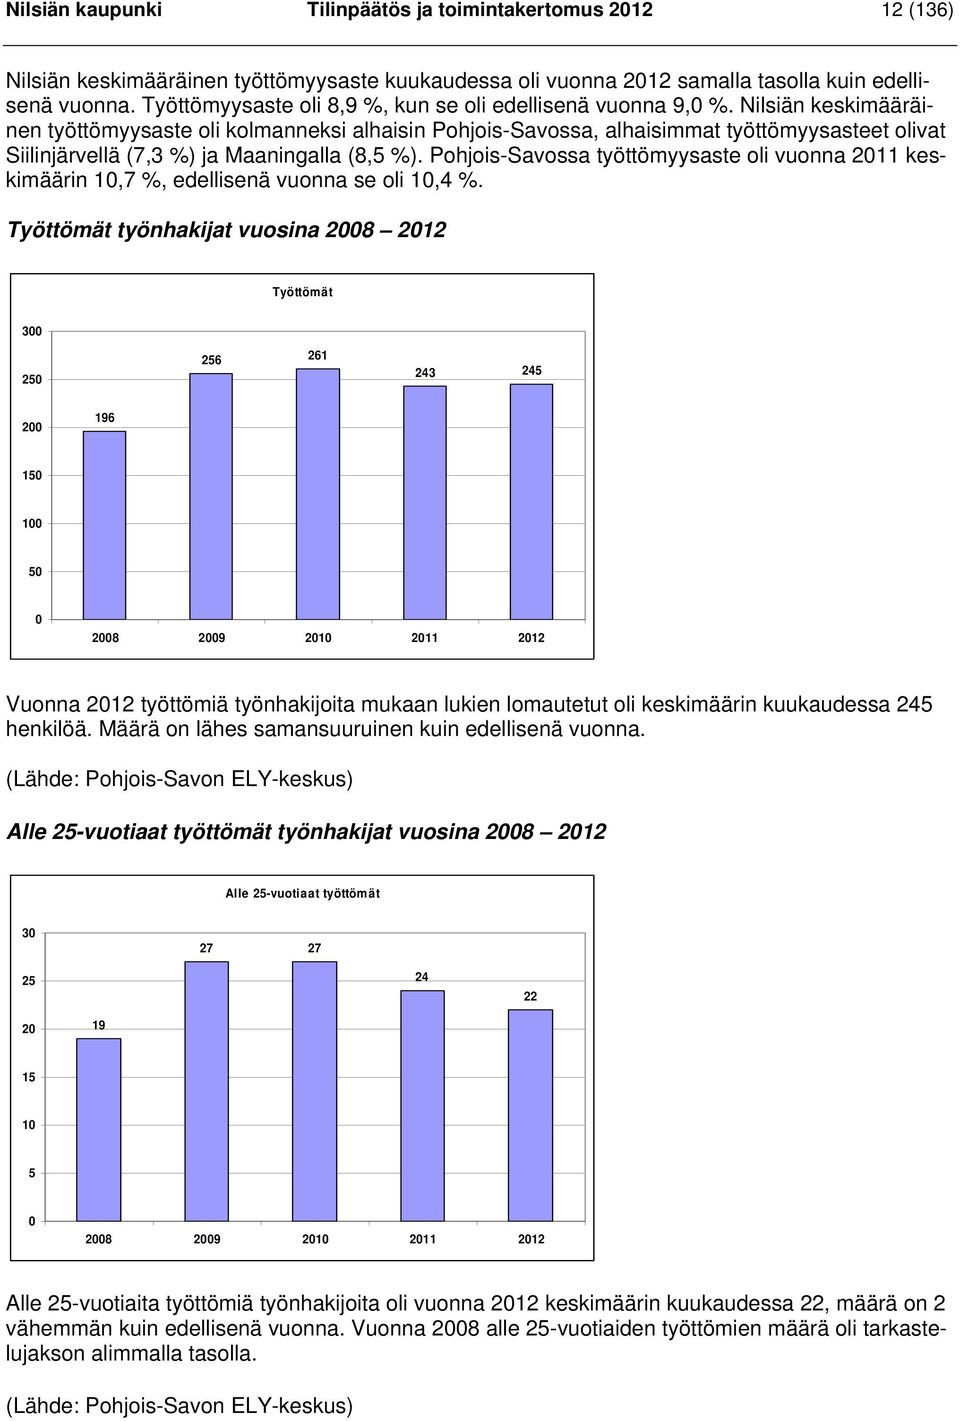 Nilsiän keskimääräinen työttömyysaste oli kolmanneksi alhaisin Pohjois-Savossa, alhaisimmat työttömyysasteet olivat Siilinjärvellä (7,3 %) ja Maaningalla (8,5 %).